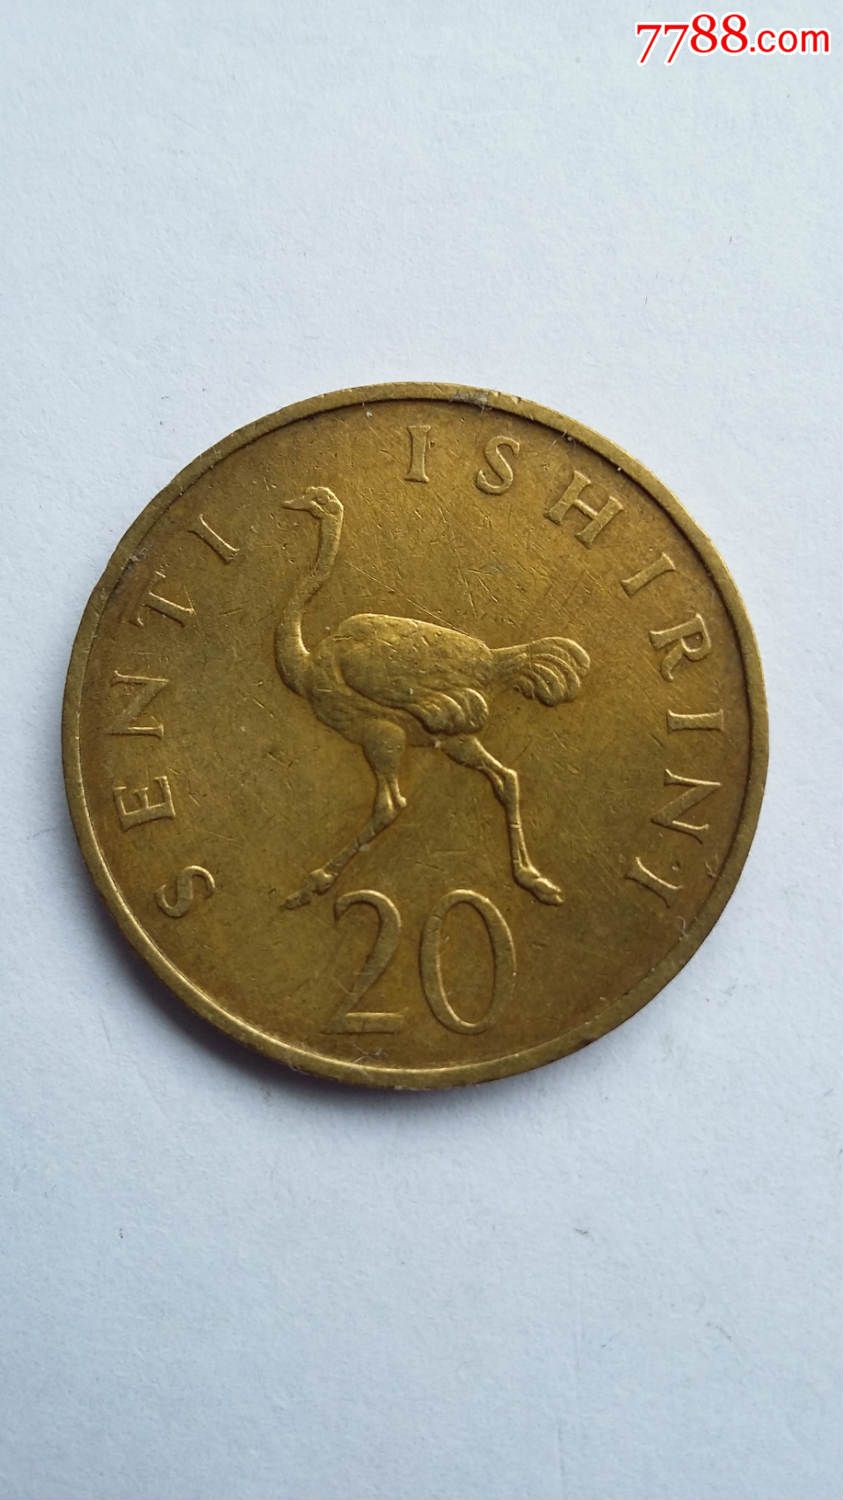 坦桑尼亚1966年20先令黄铜硬币